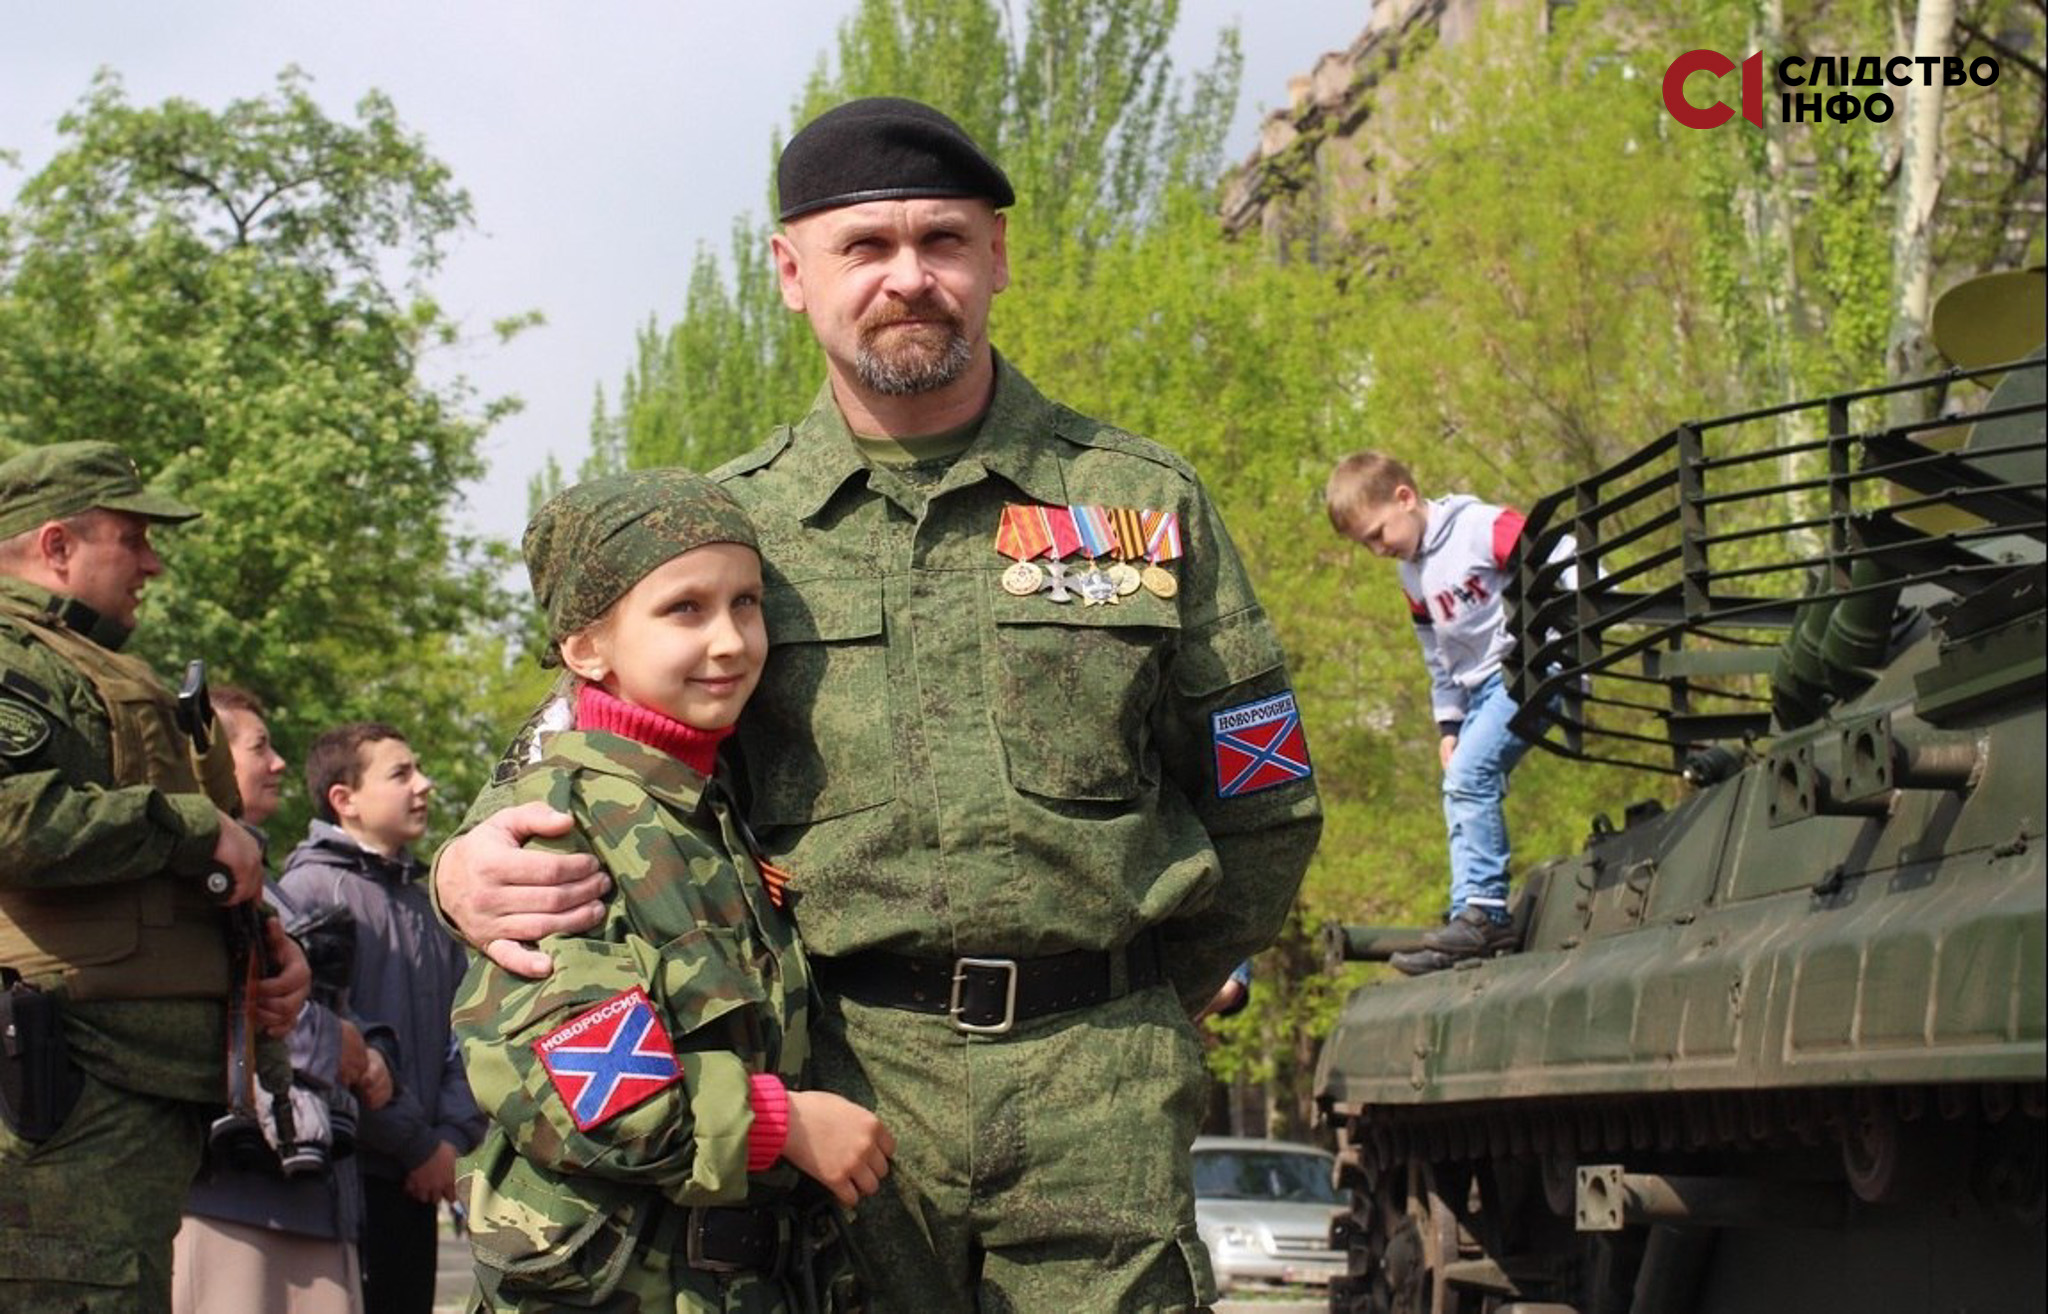 На фото чоловік у російській військовій формі обіймає маленьку дівчинку у військовій формі. Праворуч стоїть танк, на якому знаходиться маленький хлопчик. На фото є інший чоловік у формі з автоматом, який дивиться у бік хлопчика. 